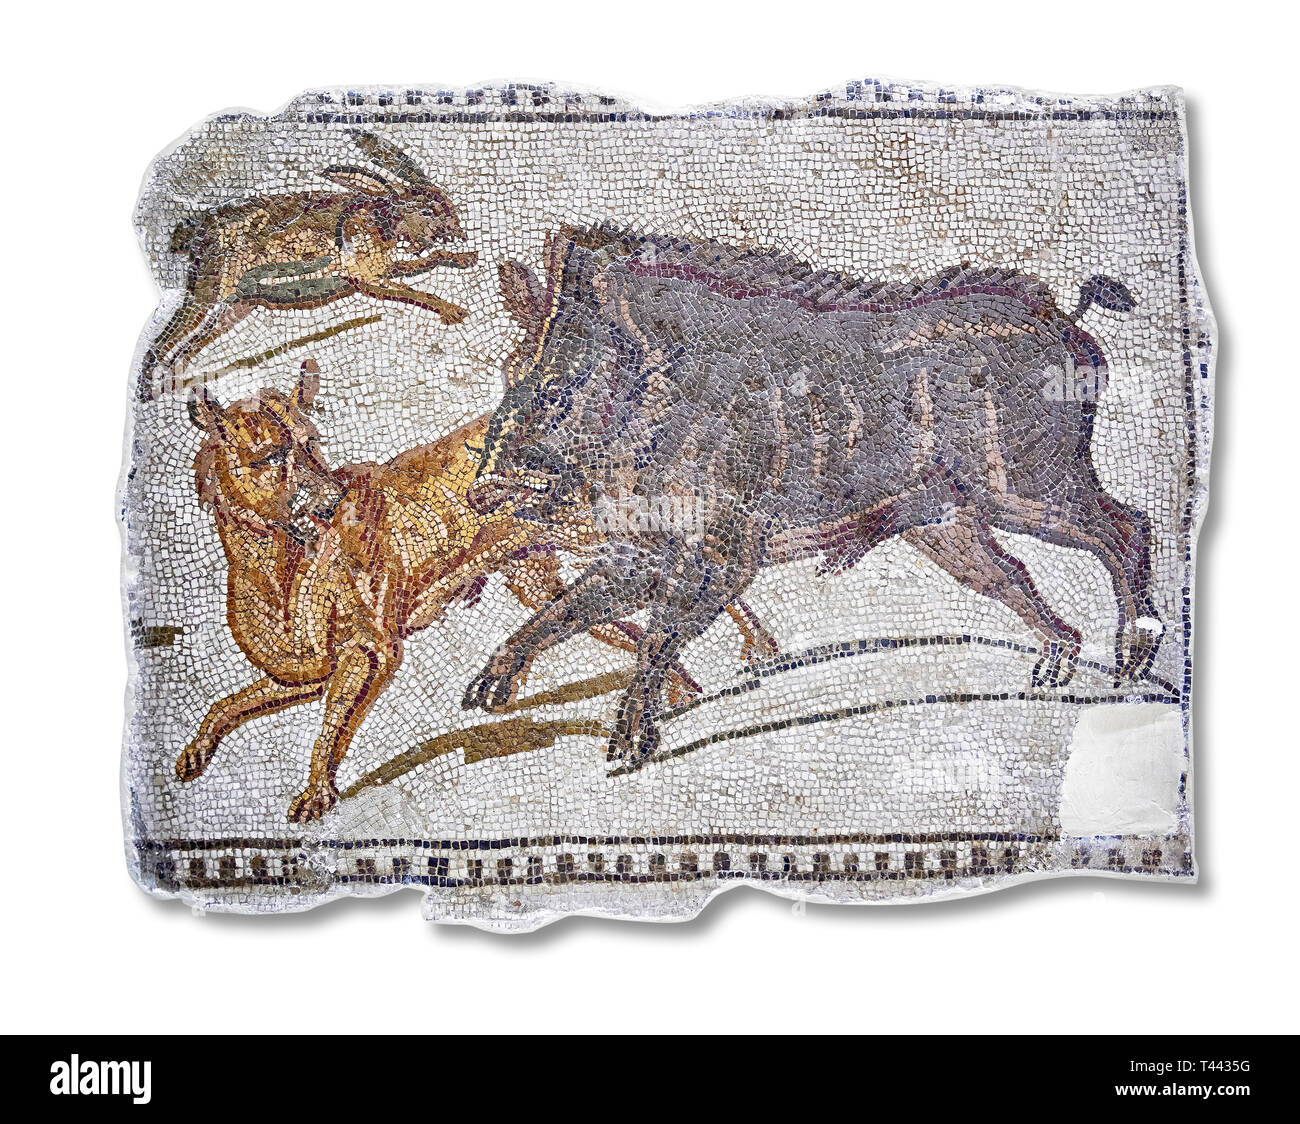 Erste Hälfte des 3. Jahrhunderts AD römische Mosaik Darstellung ein Wildschwein und Hase Jagd. Von Hadrumetum (Sousse), Tunesien. Das Bardo Museum, Tunis, Tunis Stockfoto